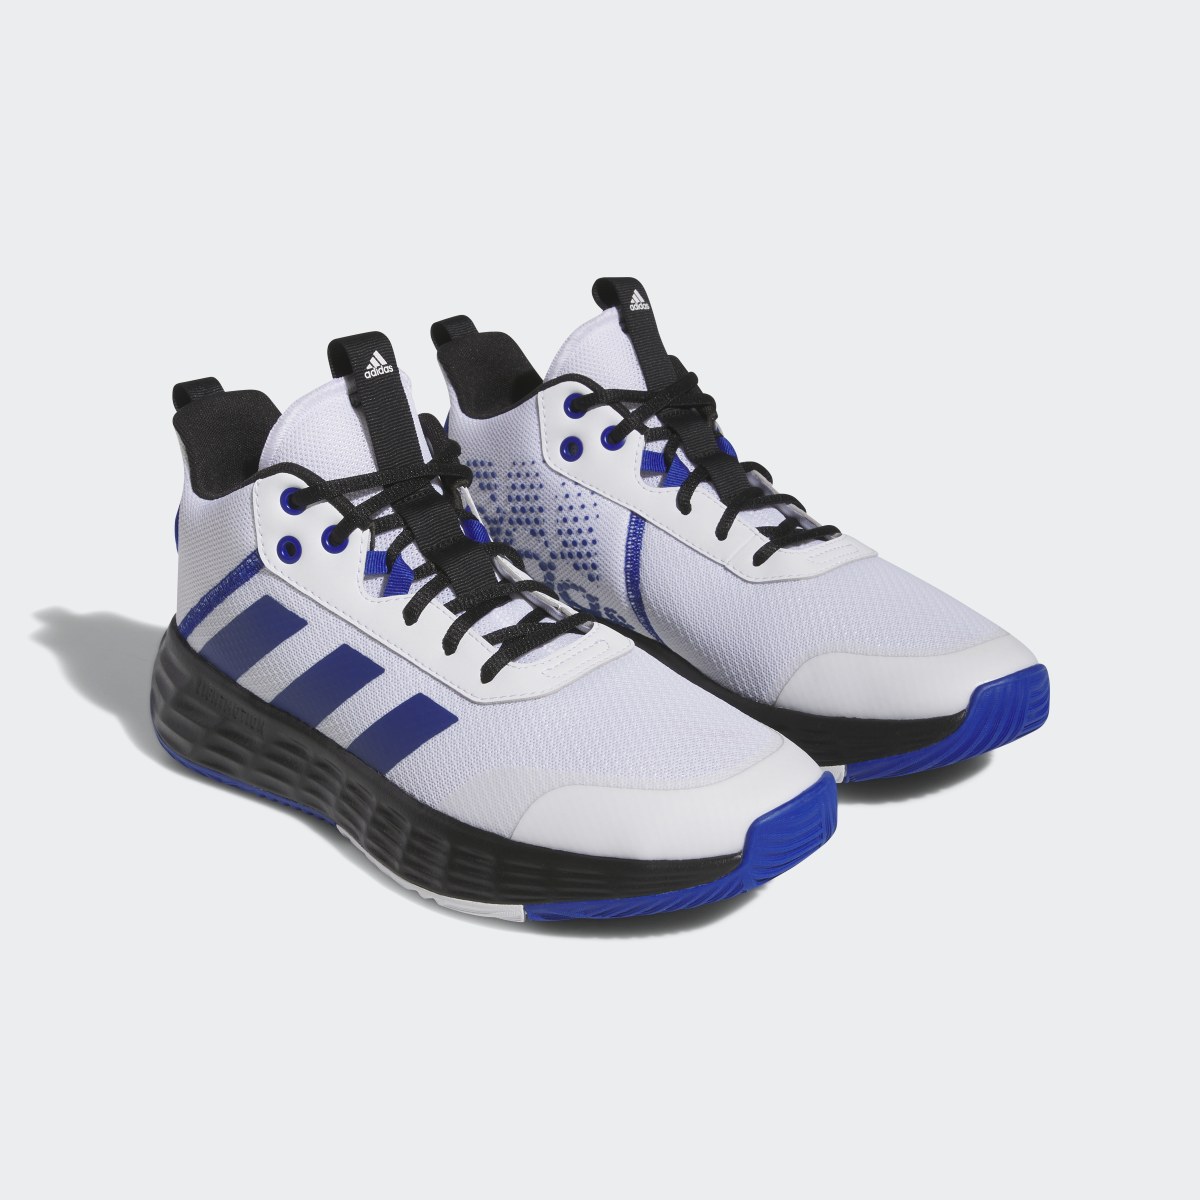 Adidas Ownthegame Ayakkabı. 5